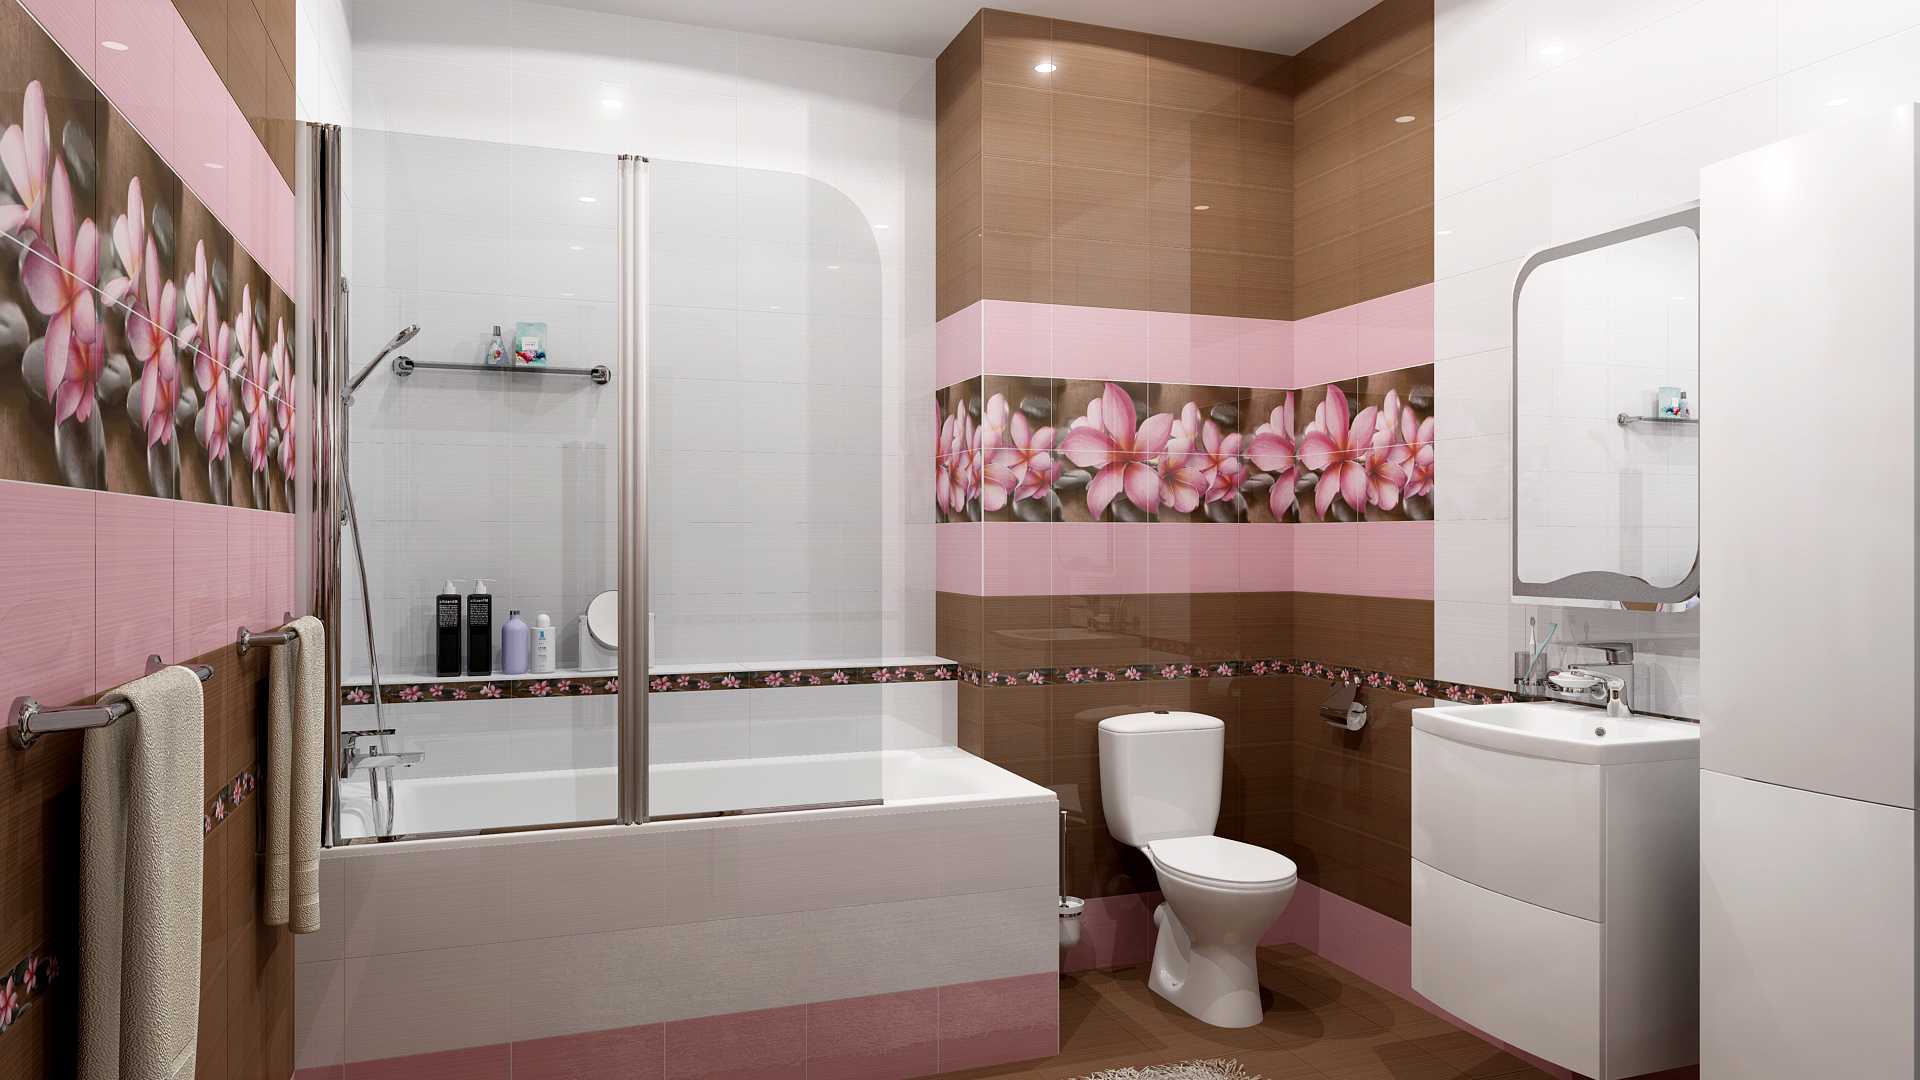 Керамическая плитка для ванной — особенности подбора керамики и ее укладки. 105 фото лучших идей применения плитки